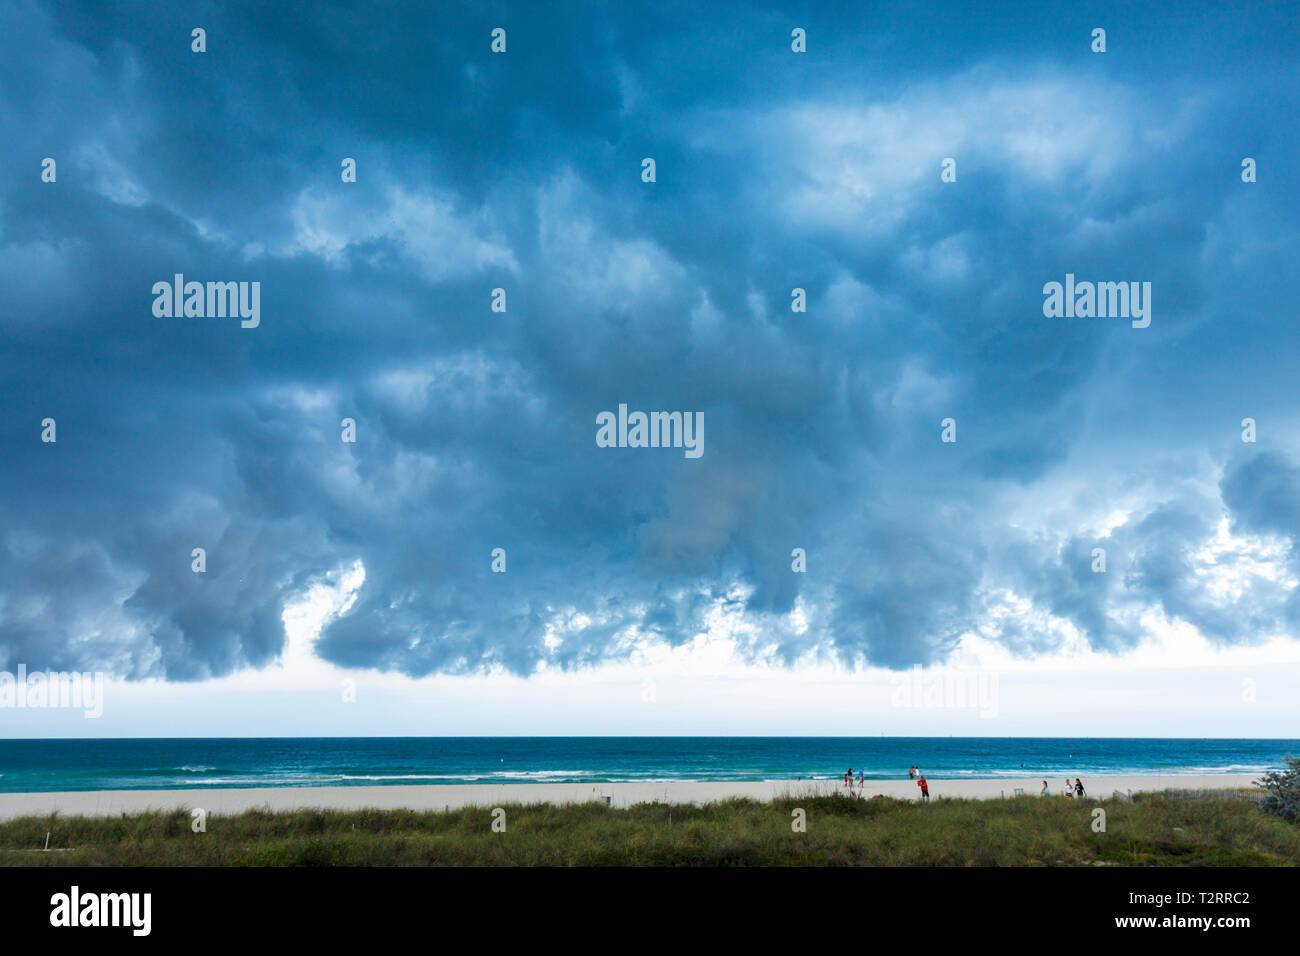 Miami Beach Florida,Oceano Atlantico,acqua,fronte freddo,tempo,tempesta,tempesta,grigio,nuvole,nuvoloso,minaccioso,ominoso,cielo scuro,FL090417031 Foto Stock